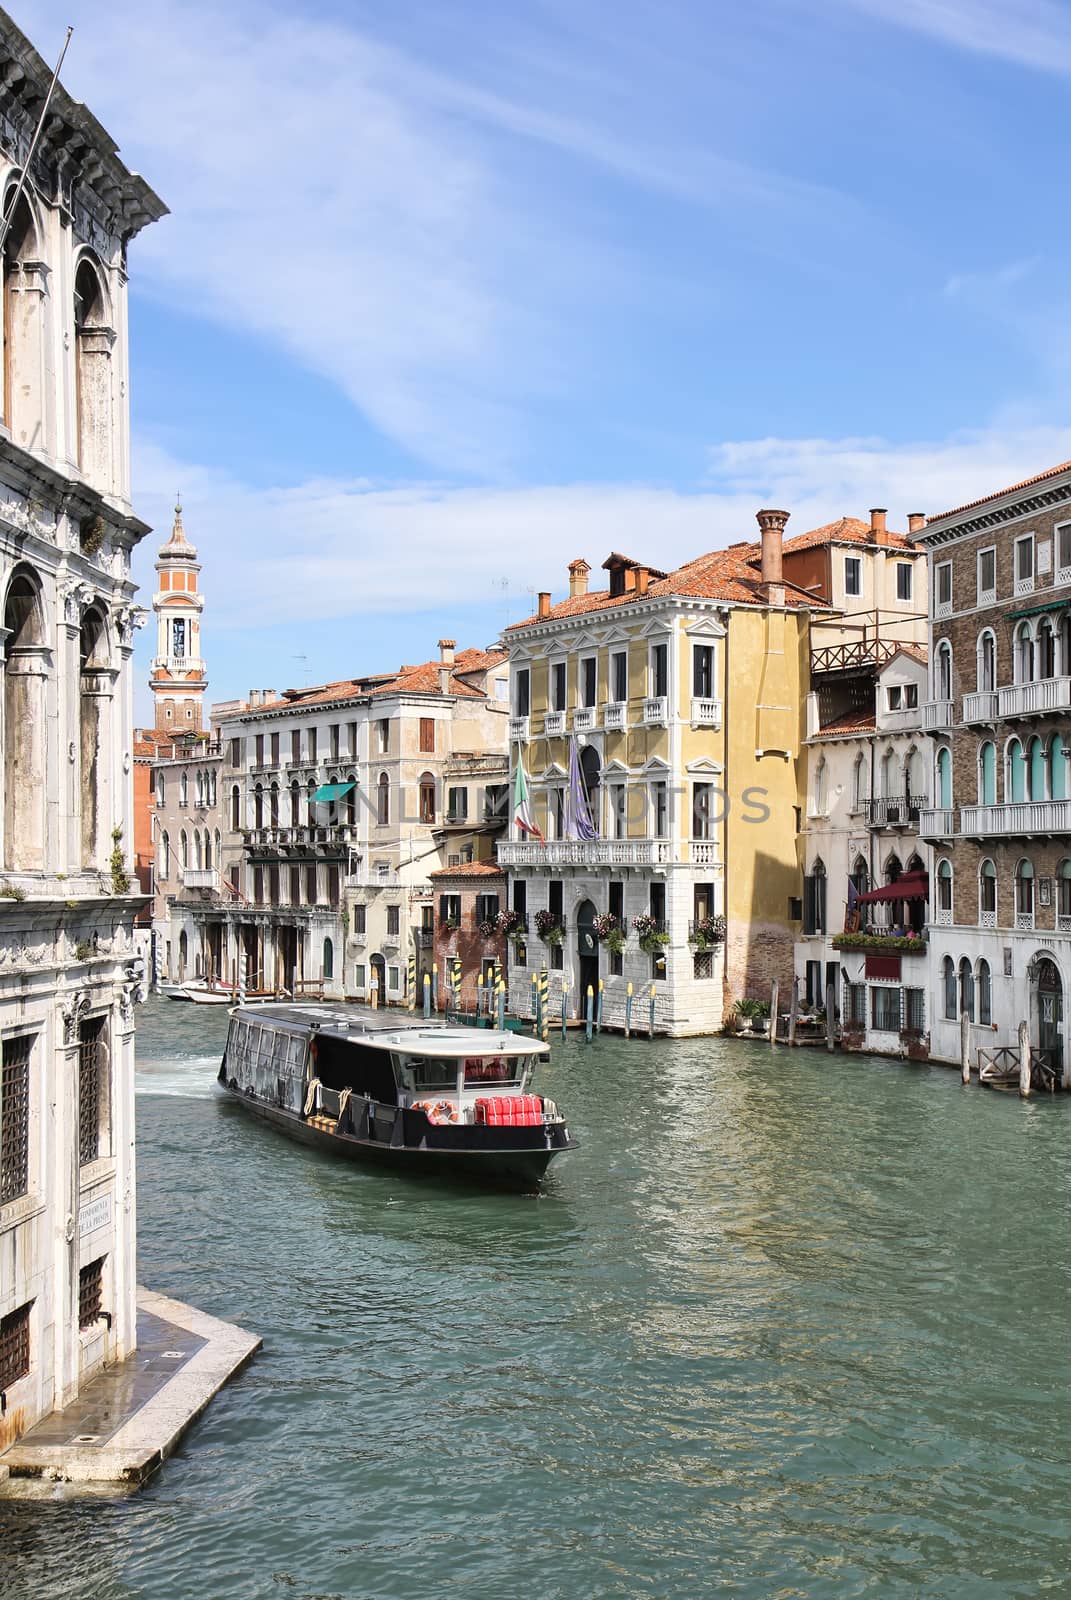 Grand Canal in Venice from Rialto Bridge by Brigida_Soriano